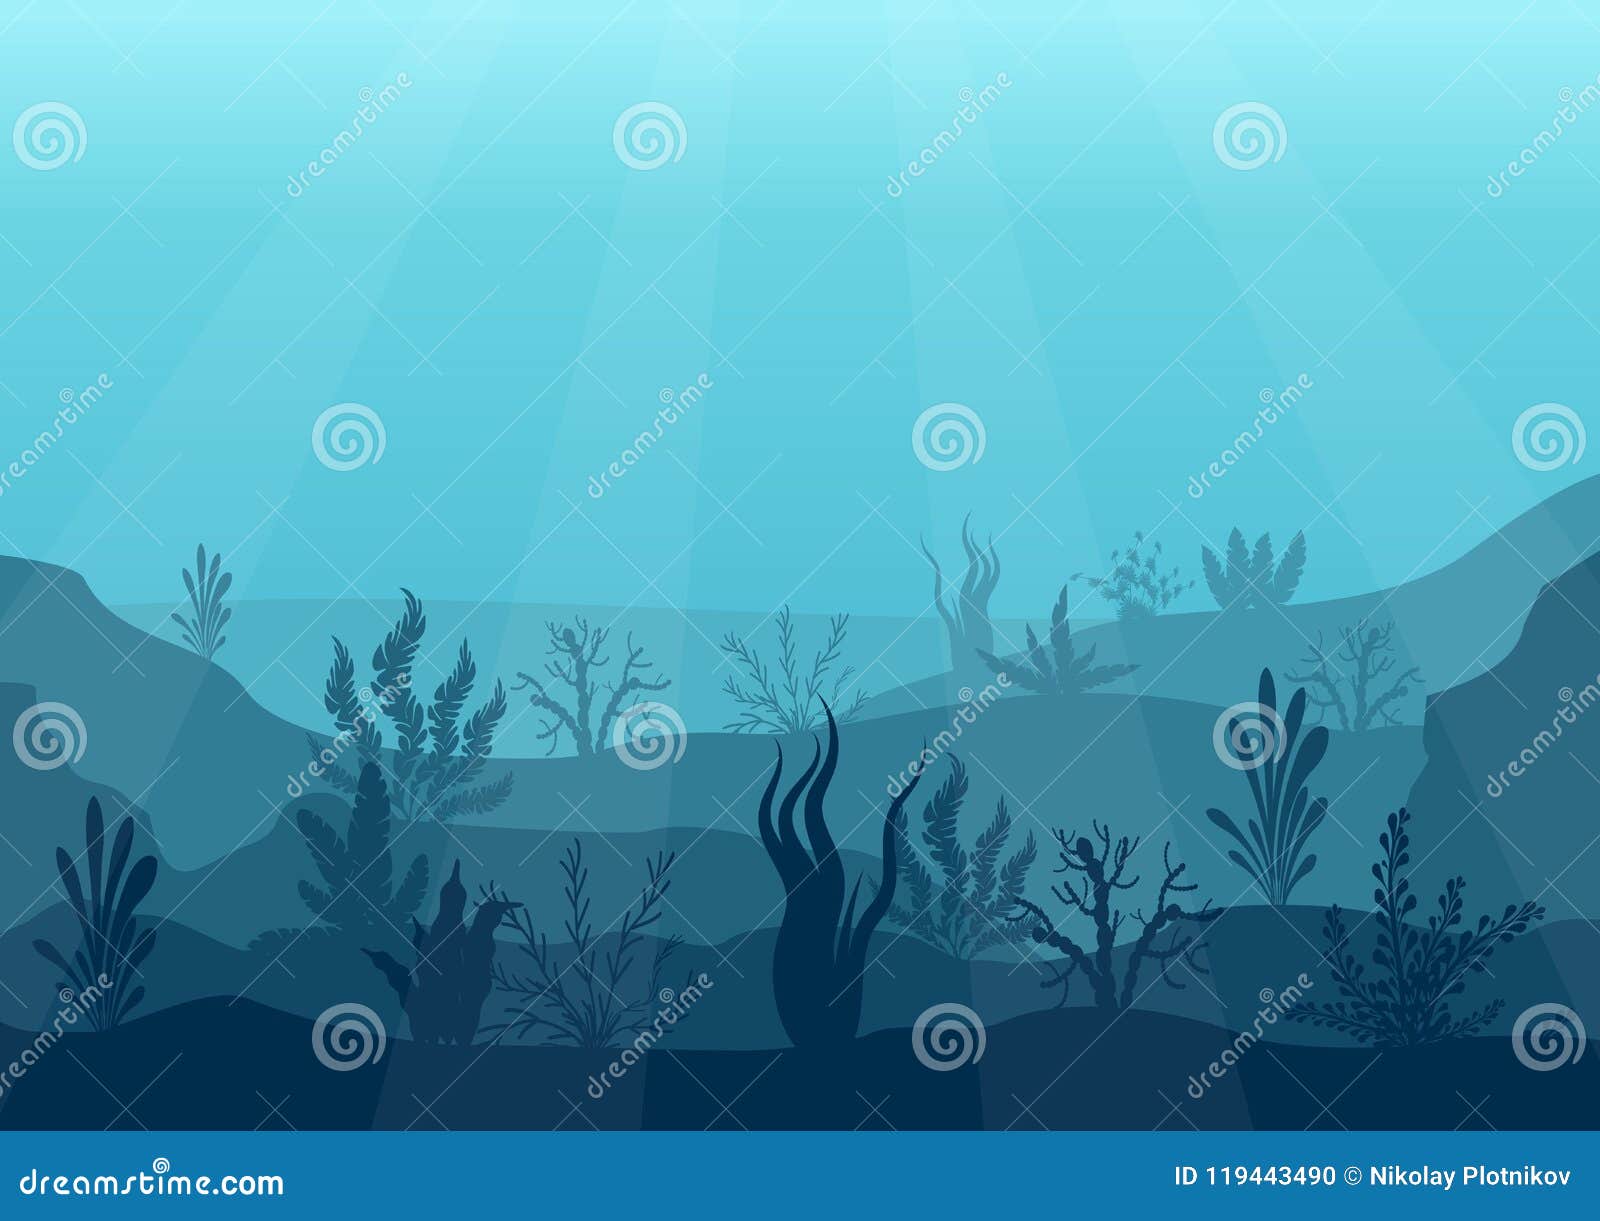 underwater ocean scene. deep blue water, coral reef and underwater plants. marine sea bottom silhouette with seaweed